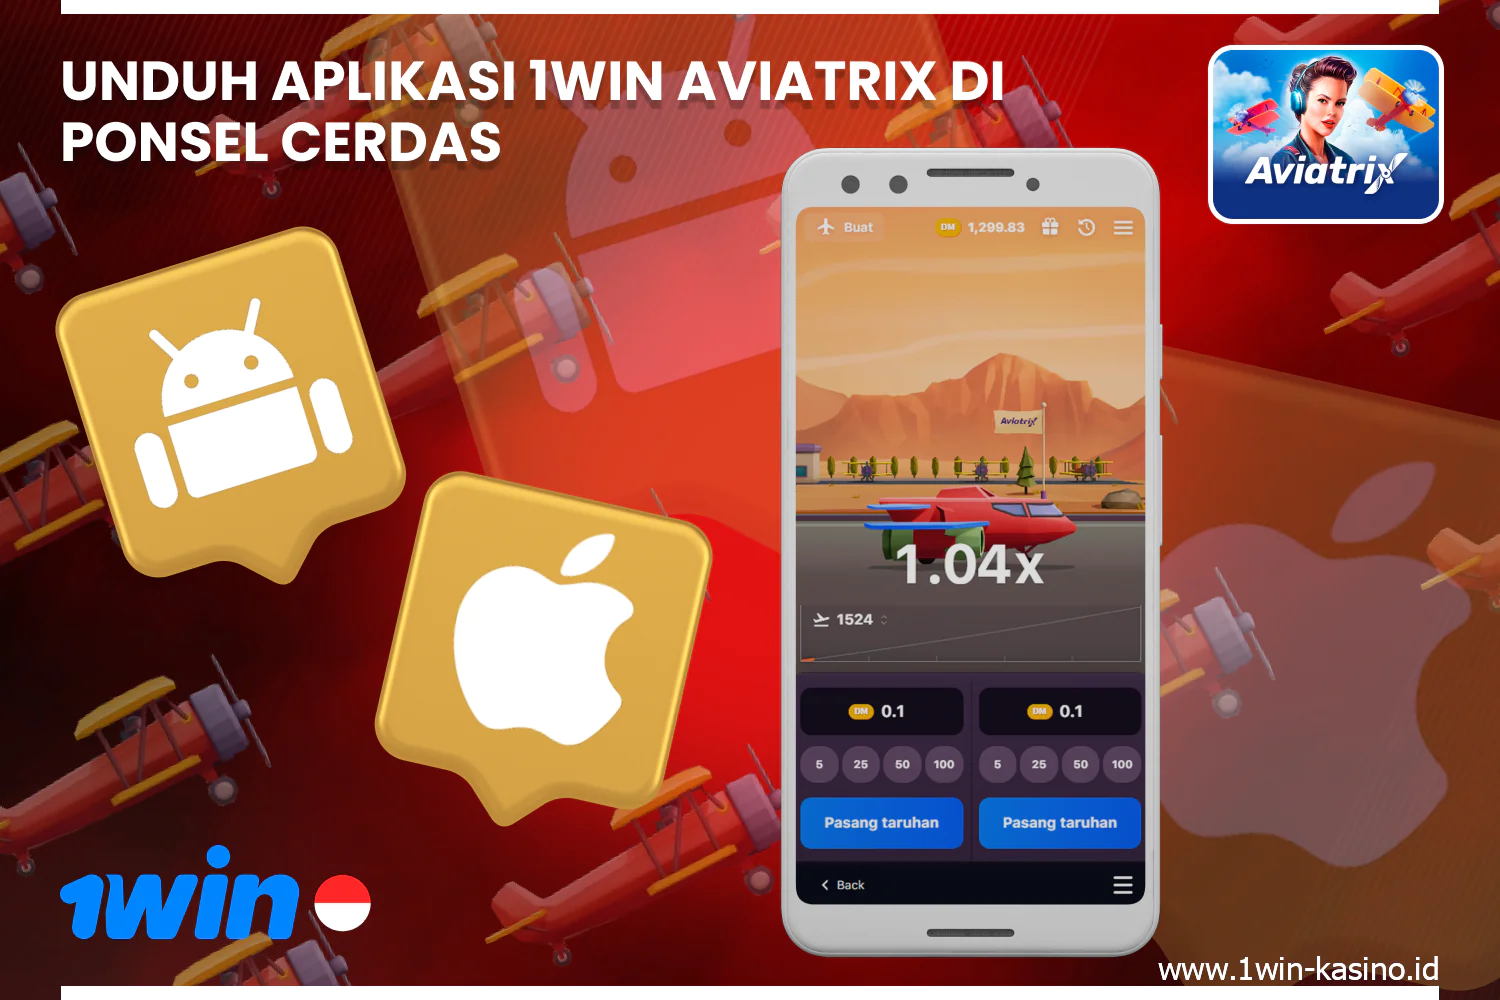 Untuk memainkan Aviatrix dengan nyaman, pengguna dari Indonesia dapat dengan cepat dan gratis mengunduh aplikasi mobile untuk Android atau iOS dari situs web 1win